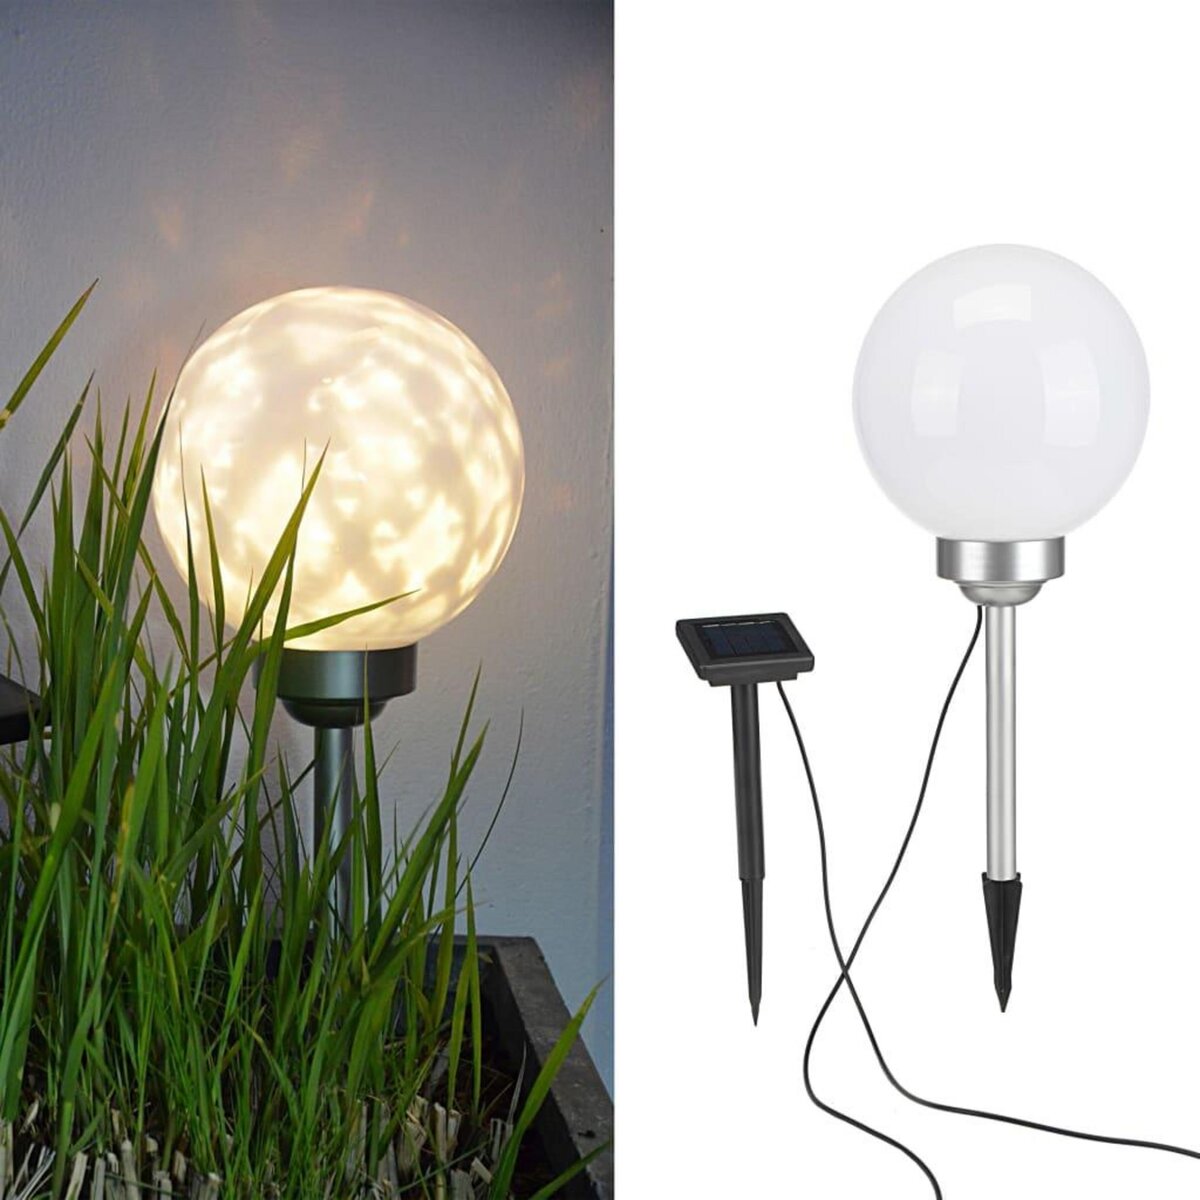 HI HI Lampe boule solaire rotative a LED de jardin 20 cm